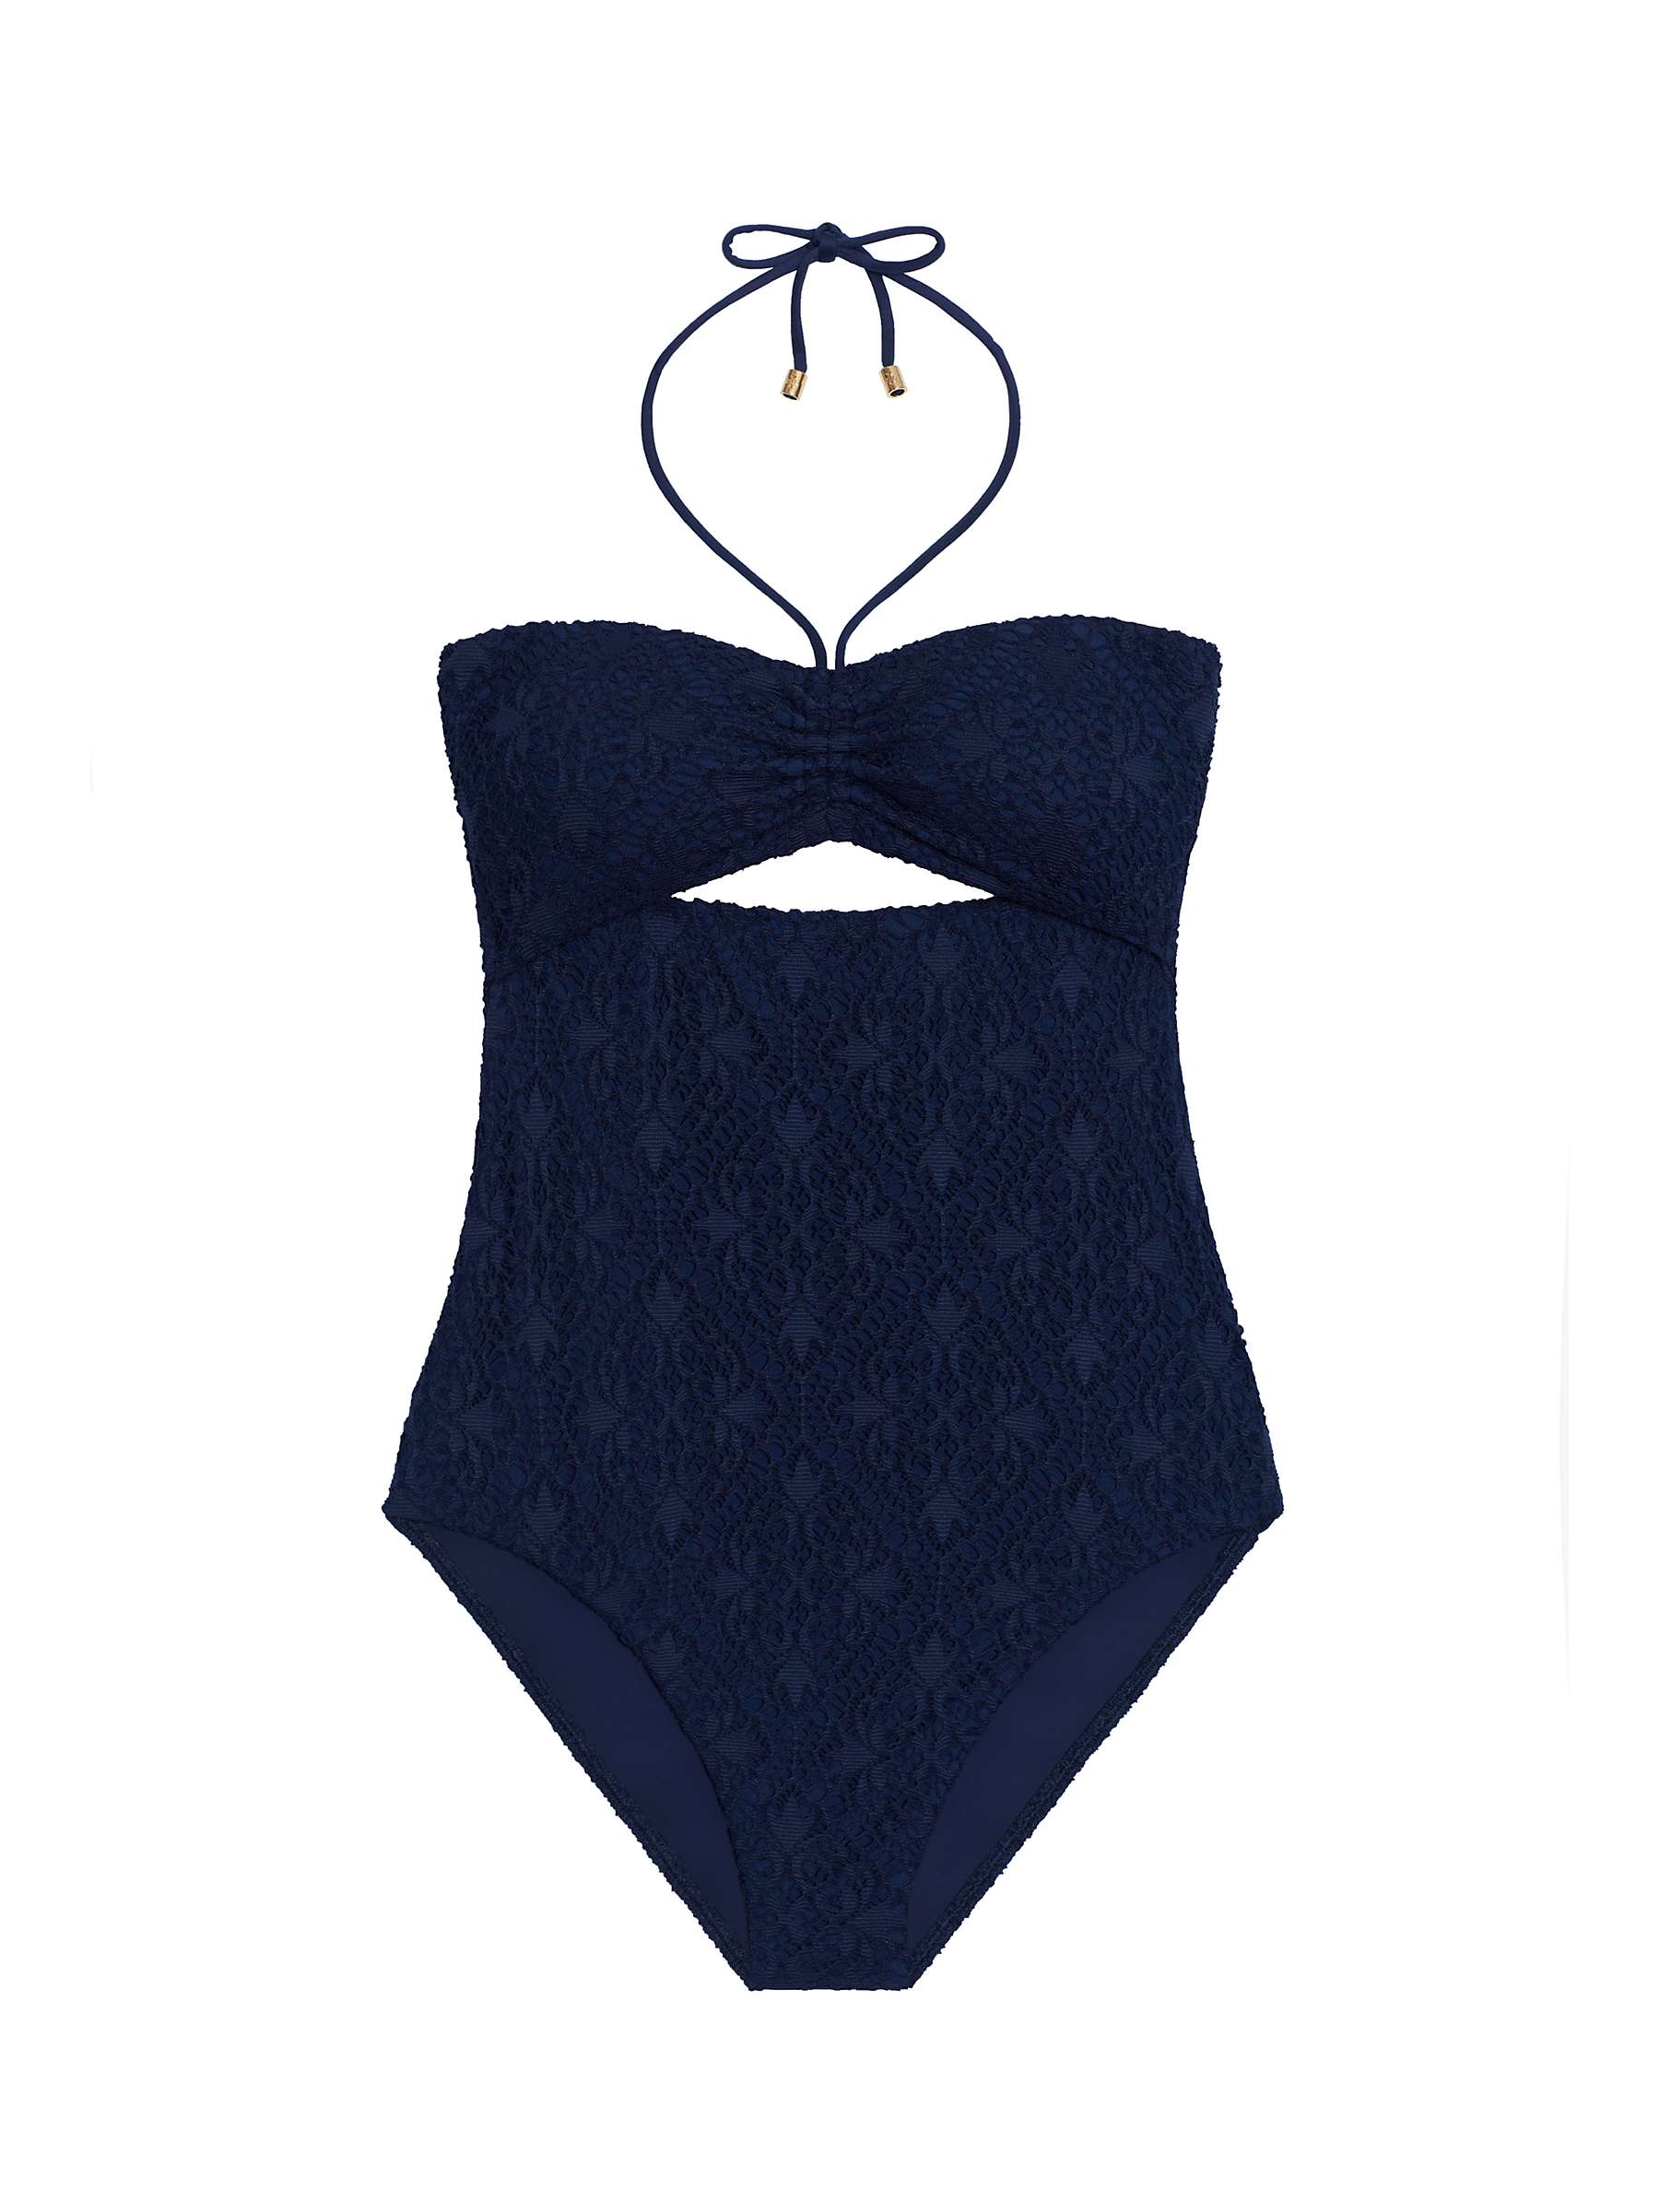 Buy Lauren Ralph Lauren Crochet Bandeau Swimsuit, Dark Navy Online at johnlewis.com